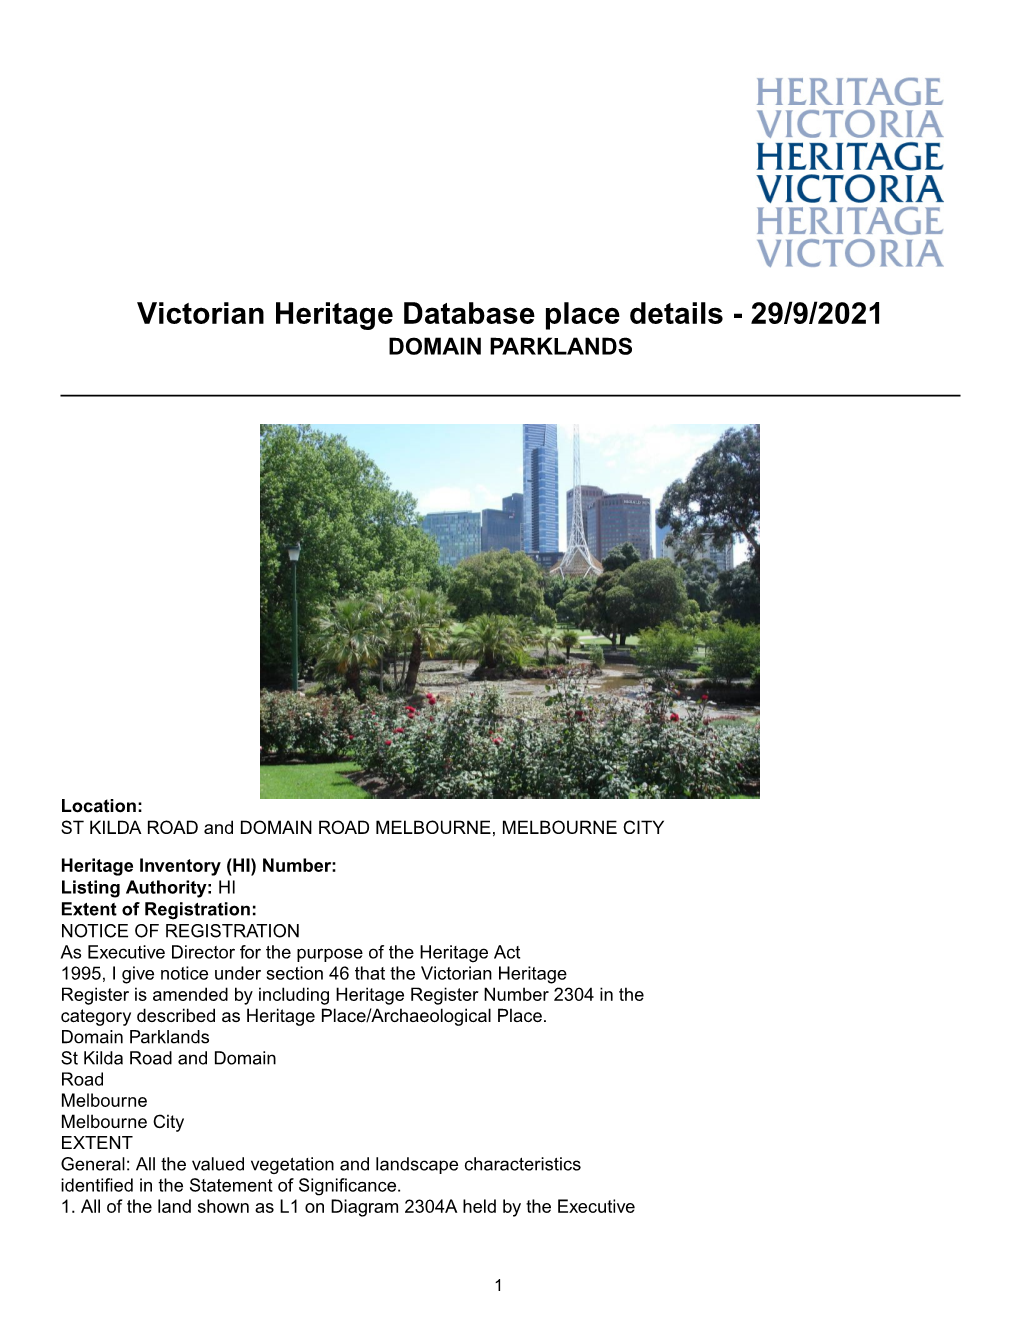 Victorian Heritage Database Place Details - 29/9/2021 DOMAIN PARKLANDS